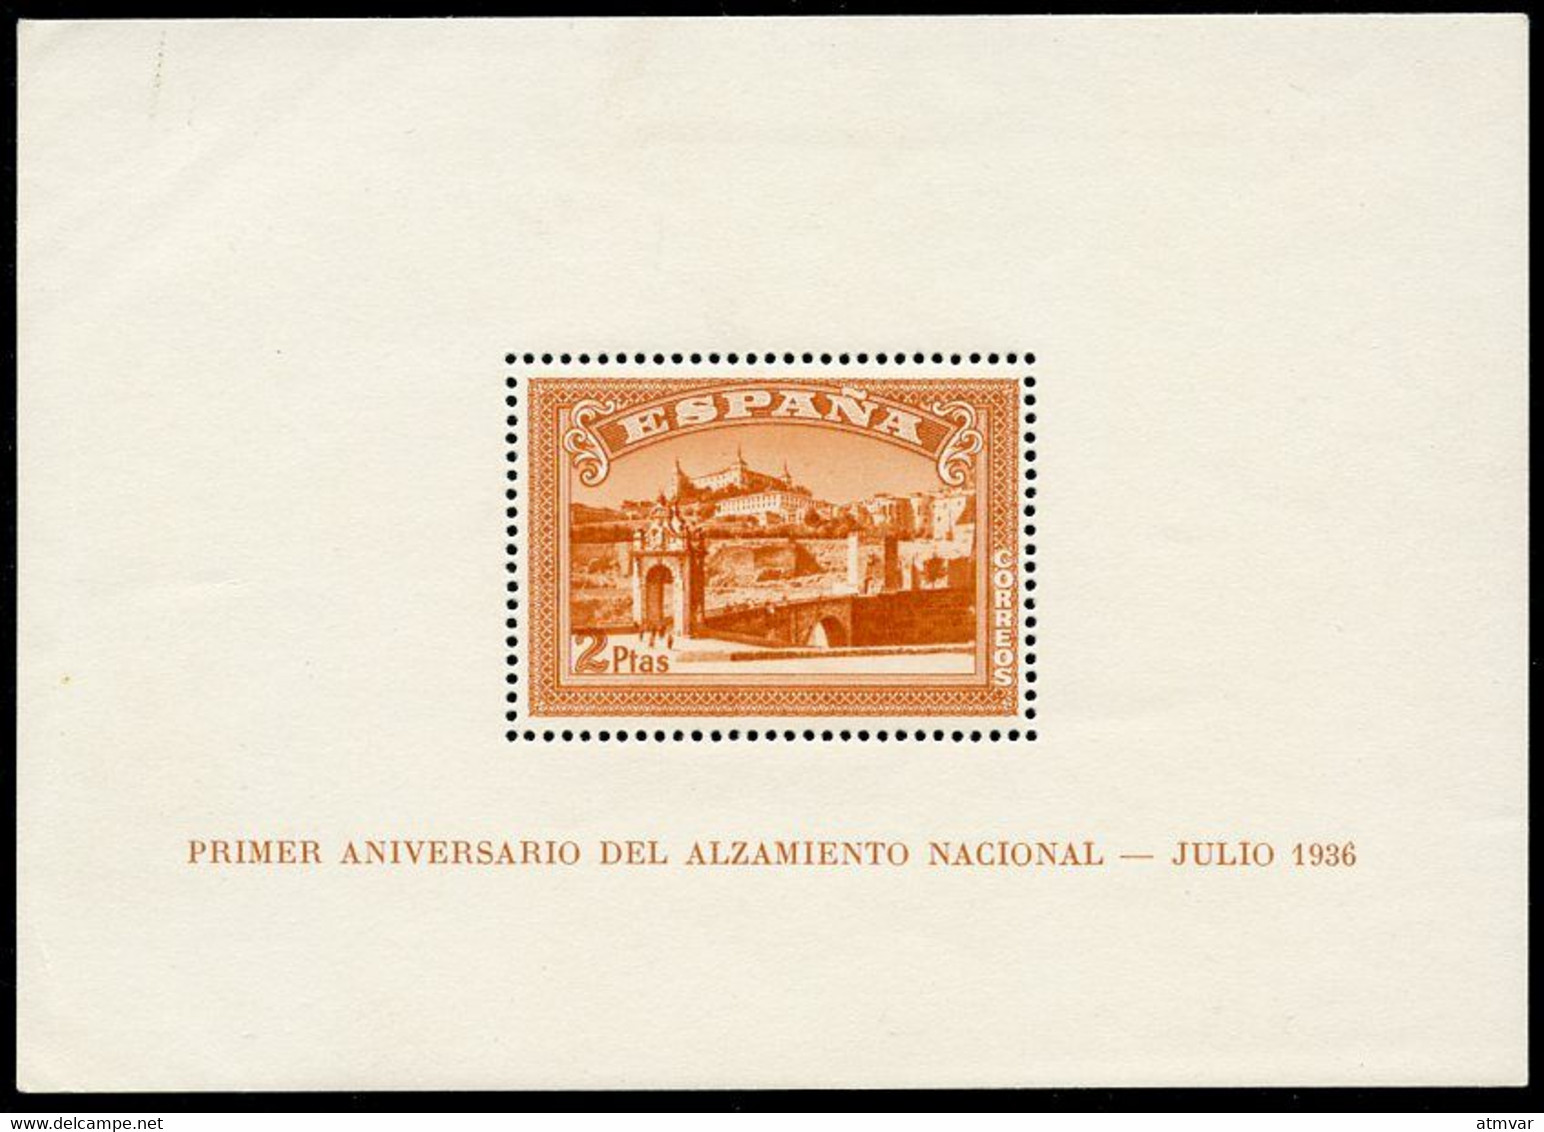 ESPAÑA ESPAGNE SPAIN (1937) Primer Aniversario Del Alzamiento Nacional - Julio 1936 - Sheet, Mint - Blocs & Hojas